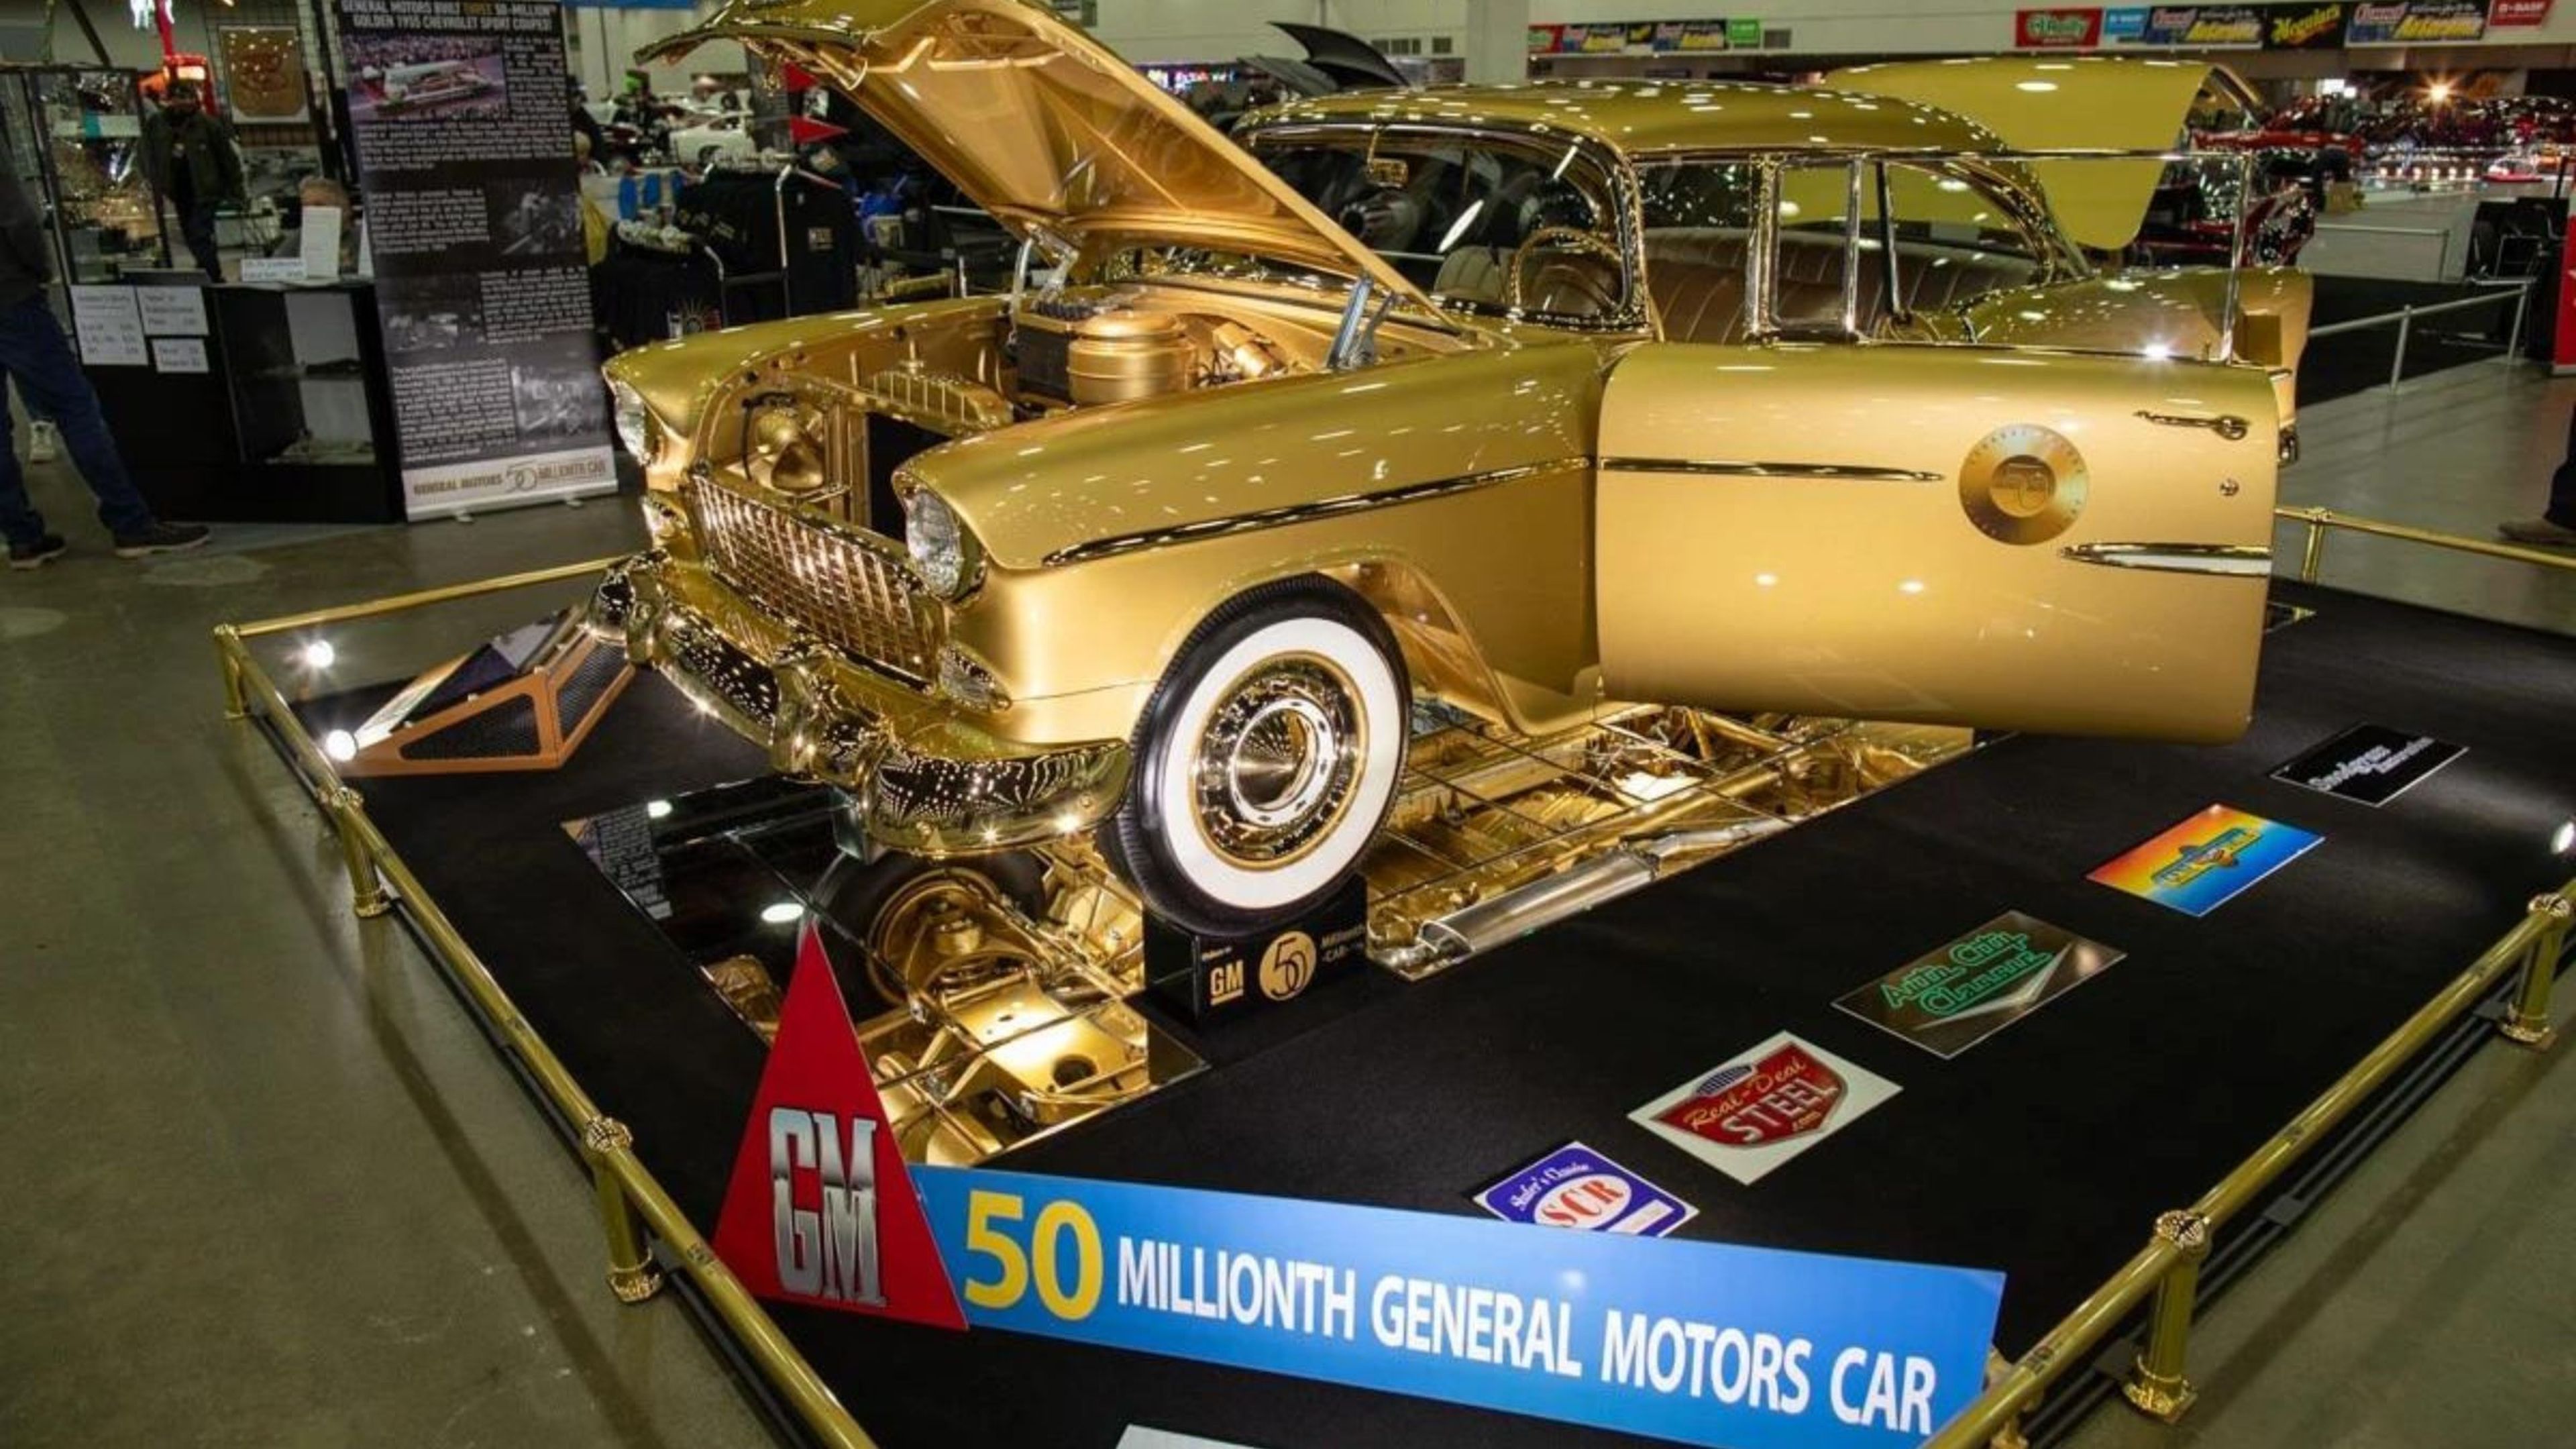 General Motors ha creado un Chevrolet Bel Air de 1955 bañado en oro como homenaje a su coche vendido número 50 millones